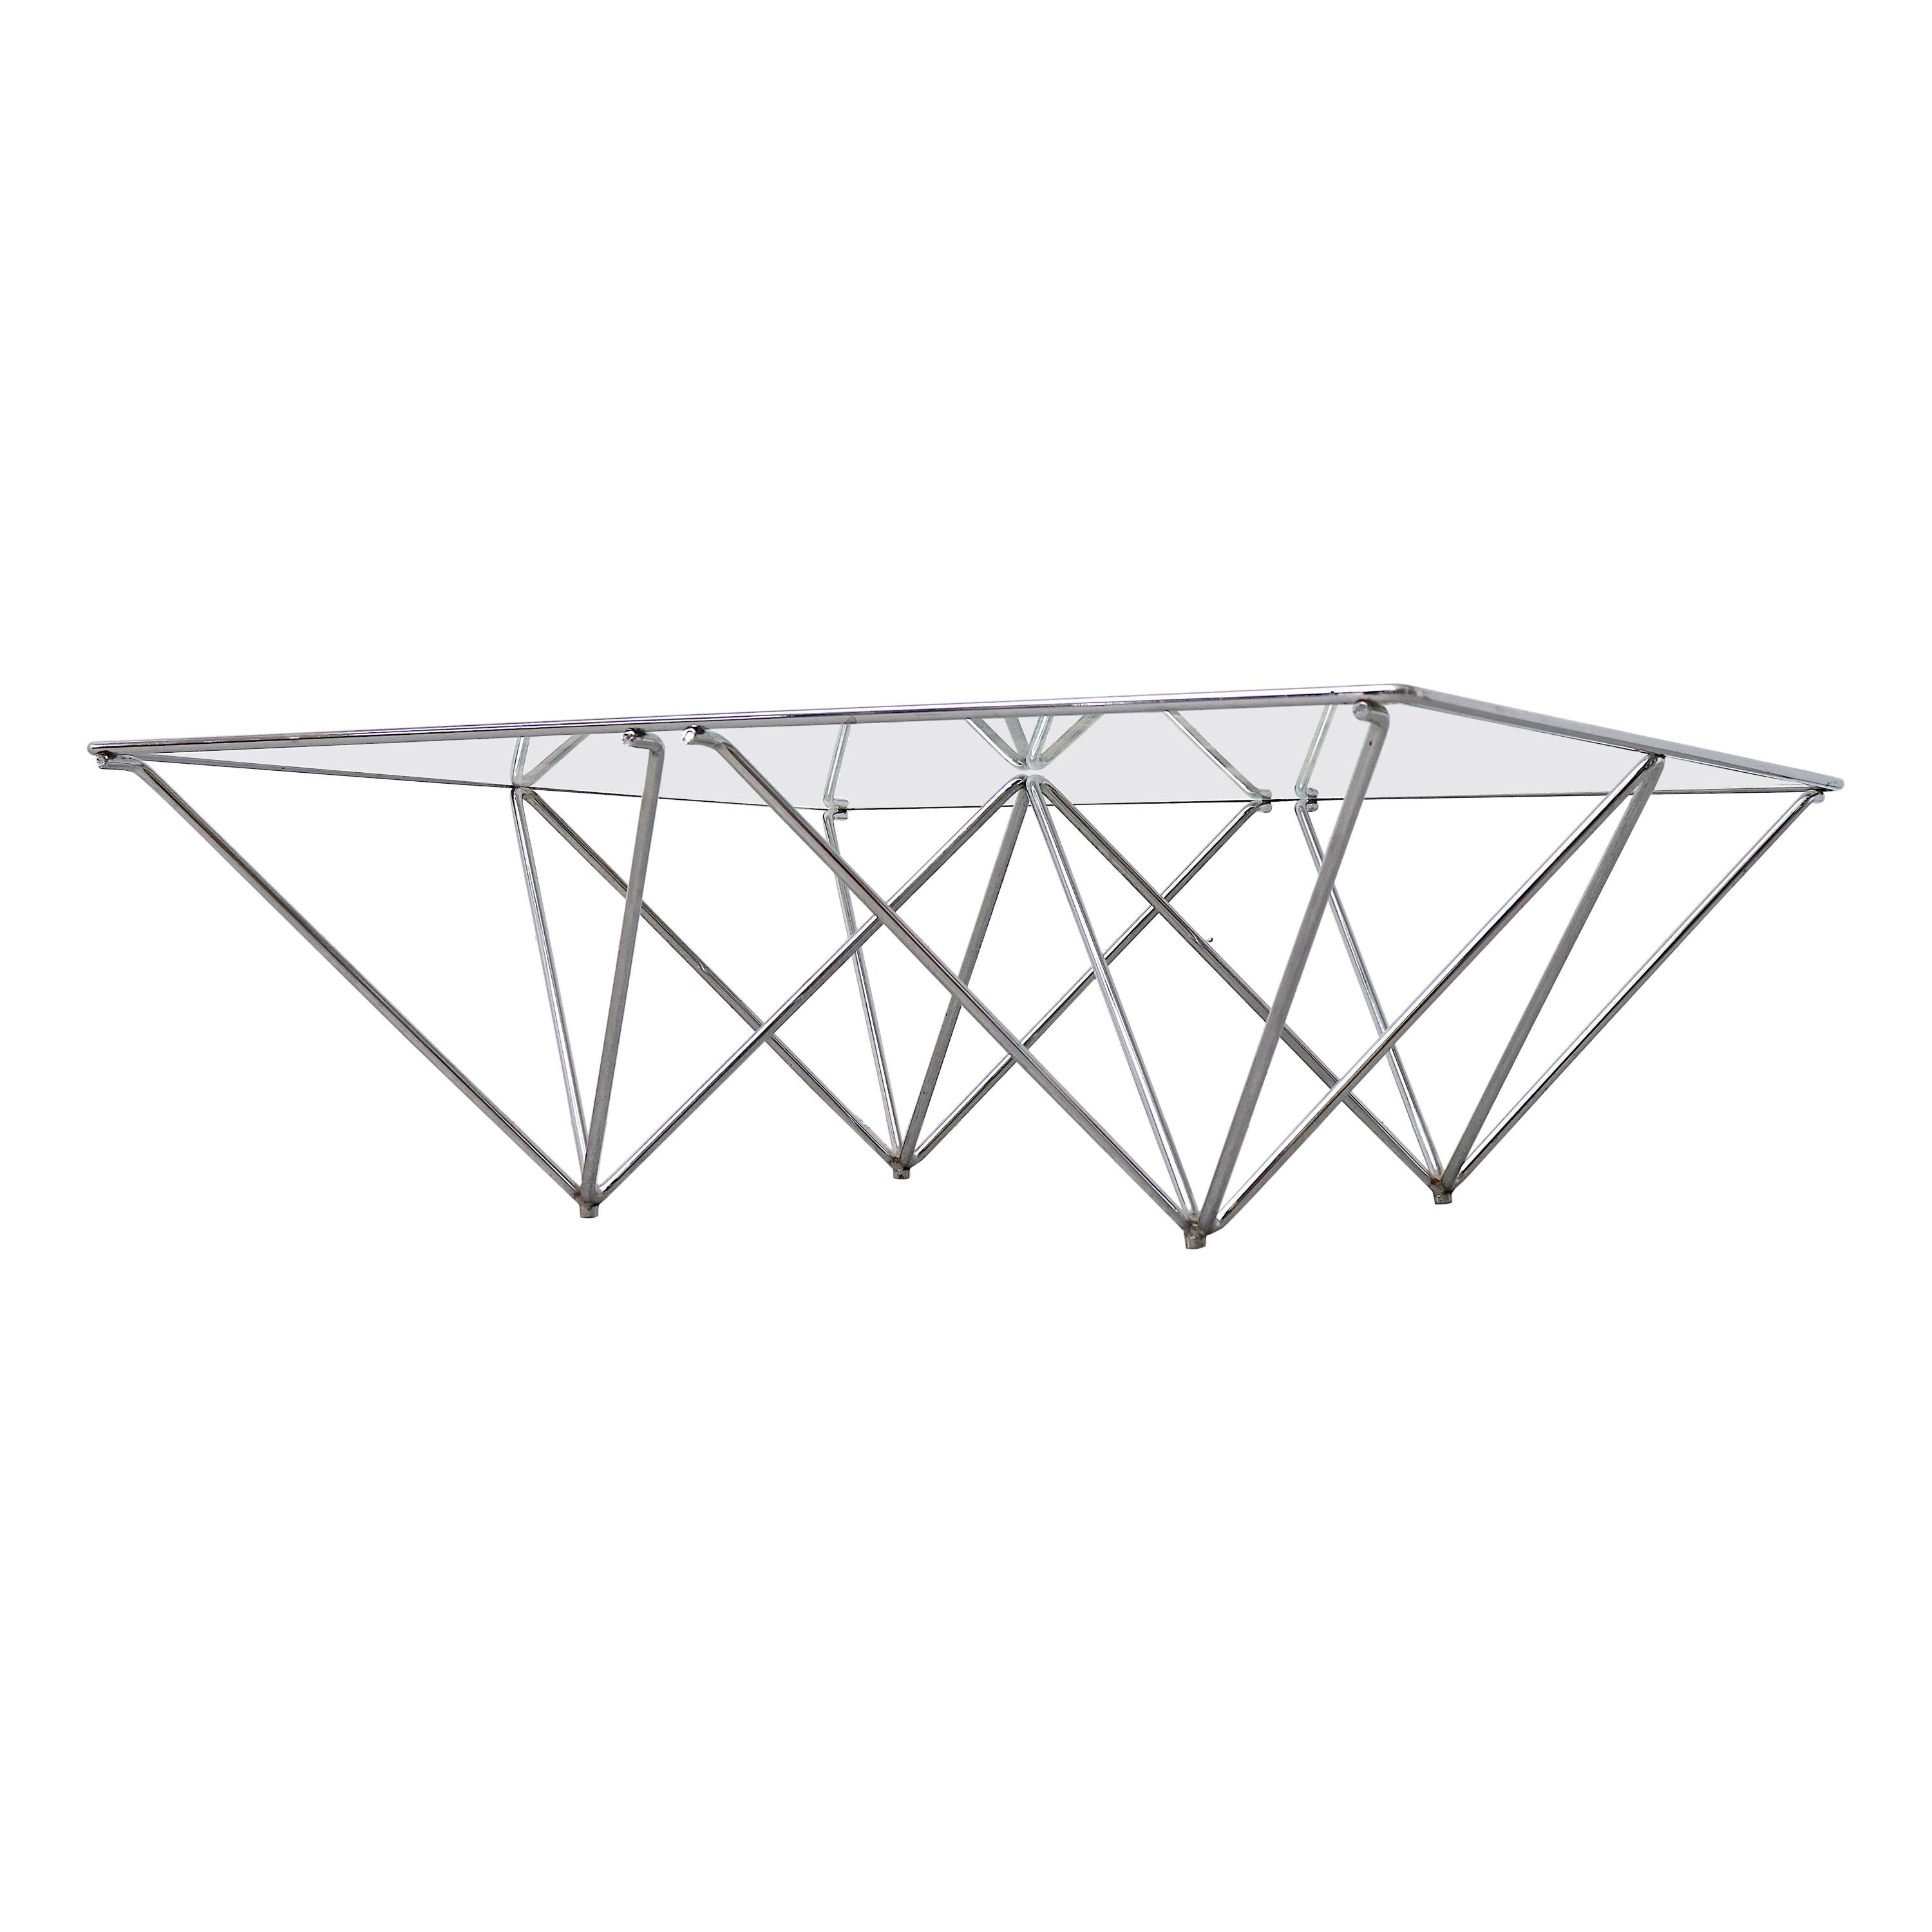 Paolo Piva "ALANDA" Style Pyramid Table